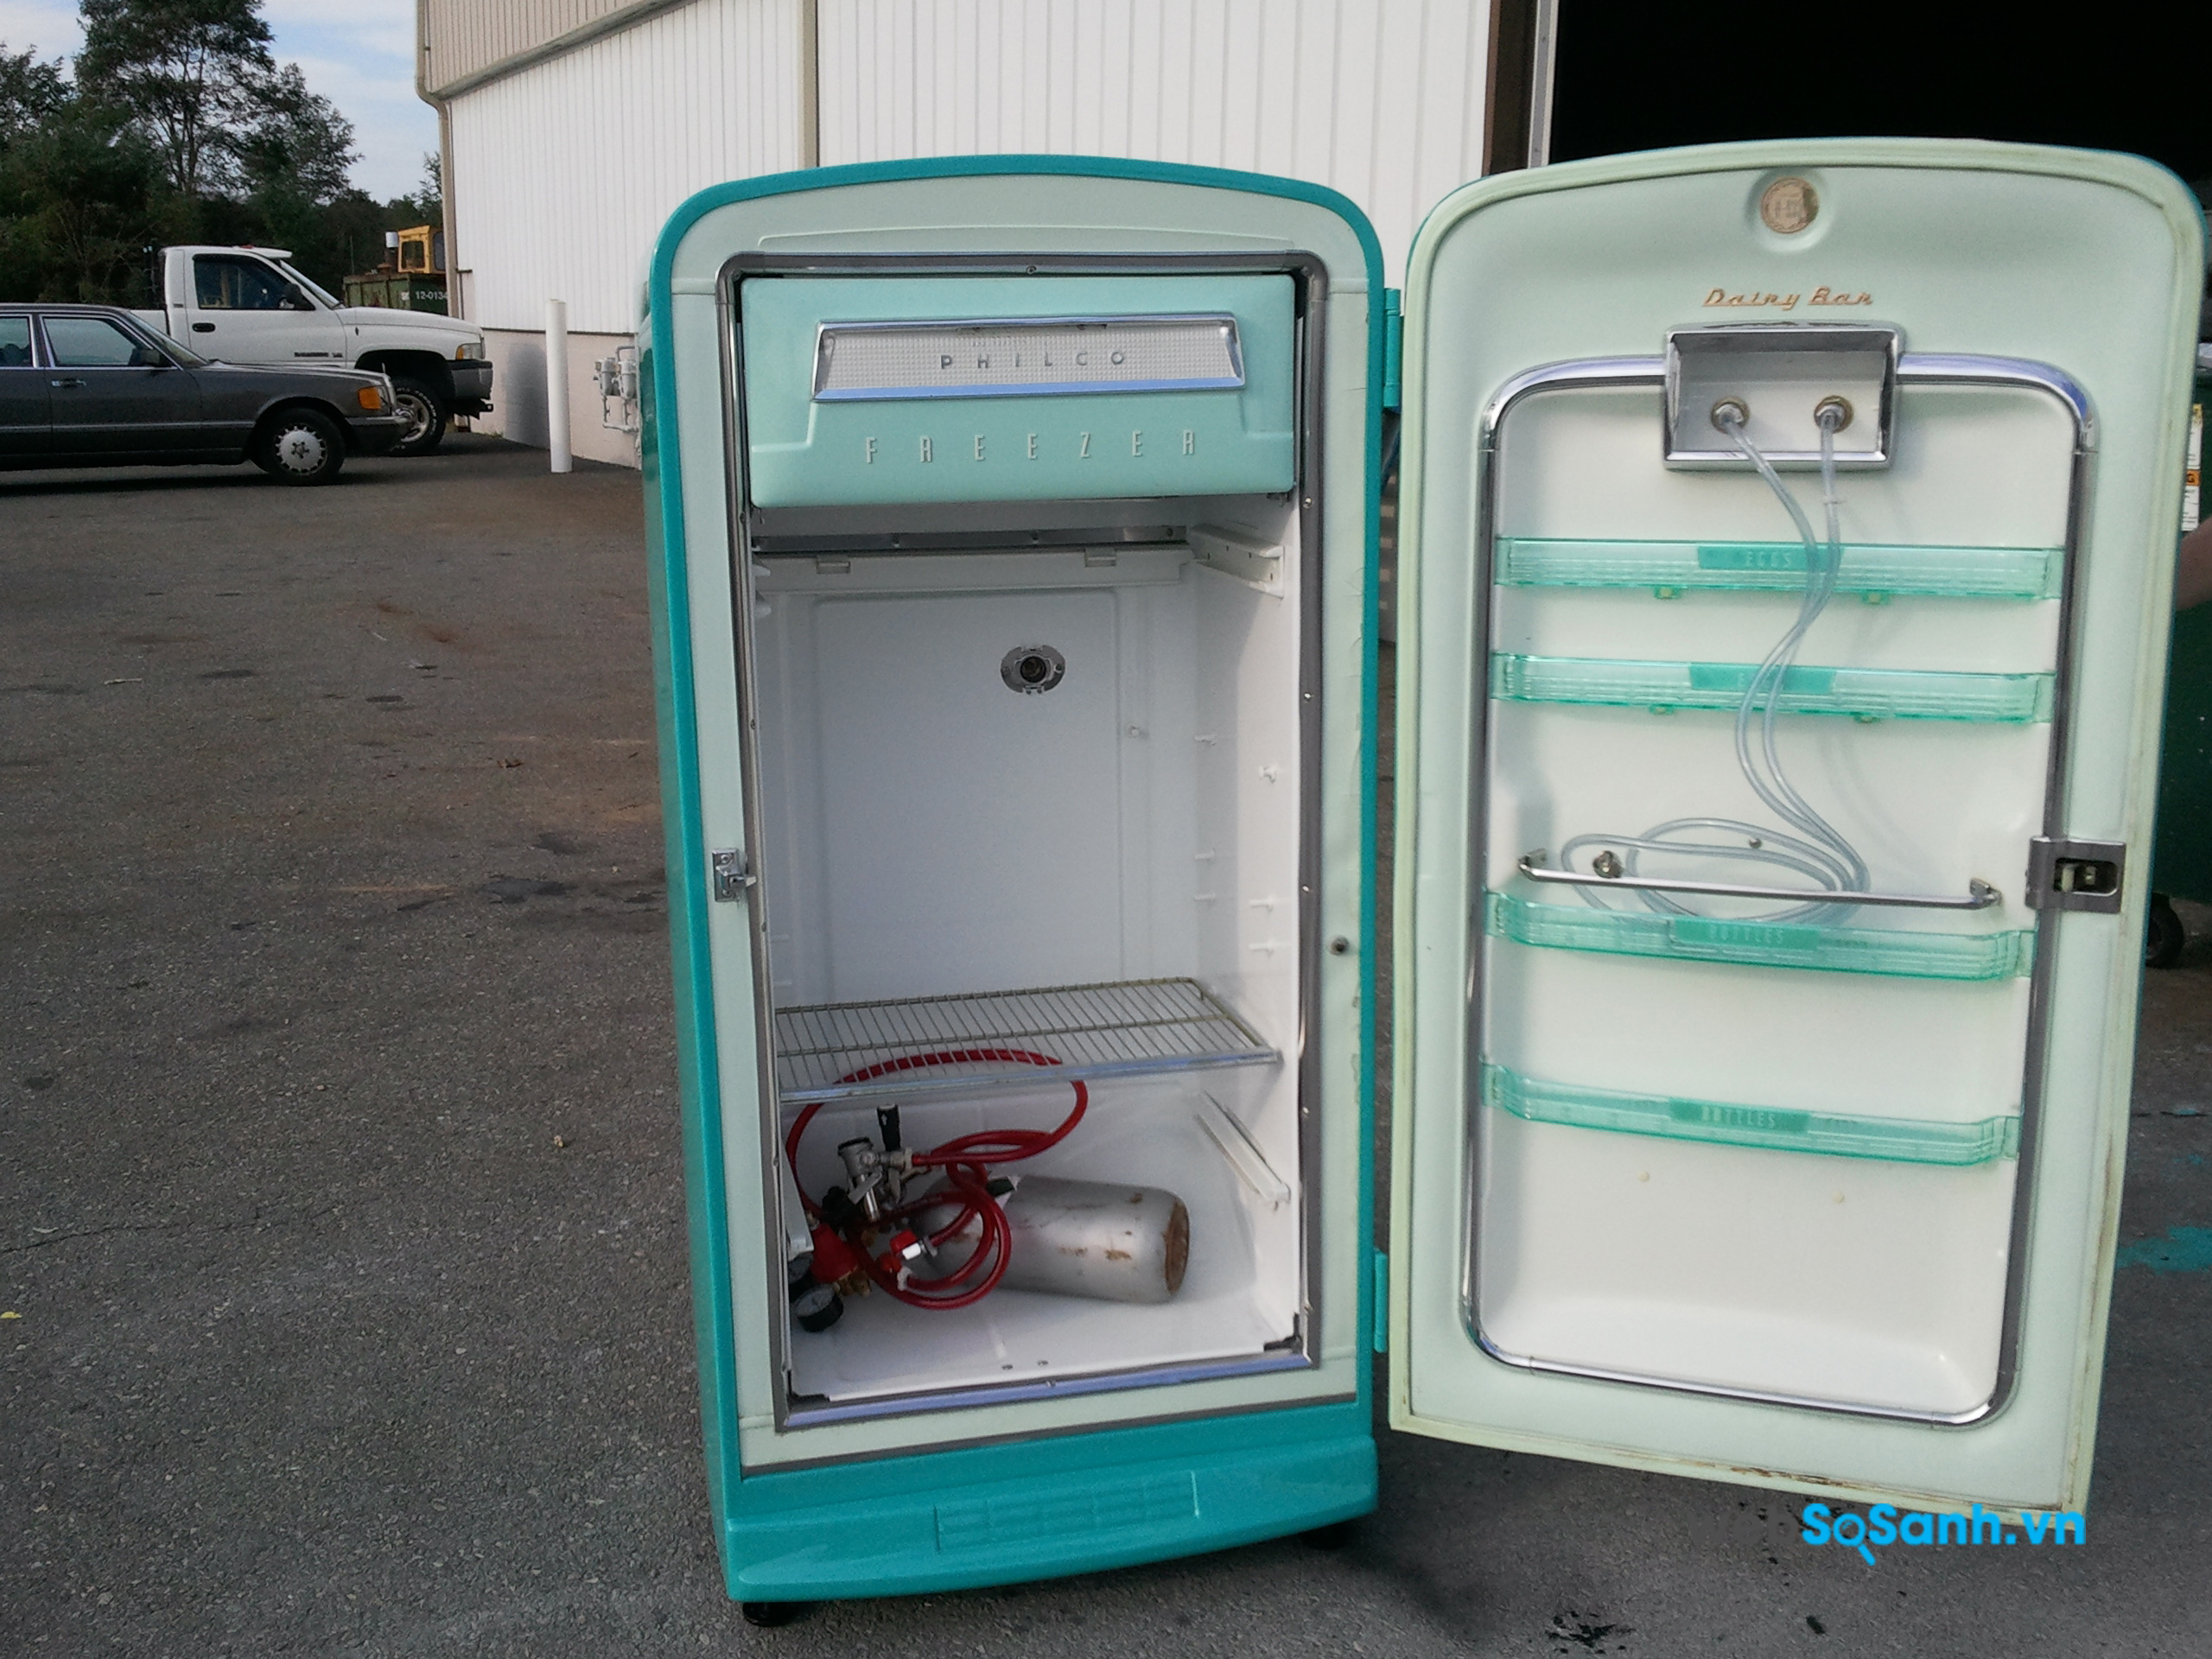 Kiểm tra kỹ càng trước khi mua tủ lạnh sẽ giúp bạn tránh mua phải đống sắt vụn không có khả năng làm lạnh